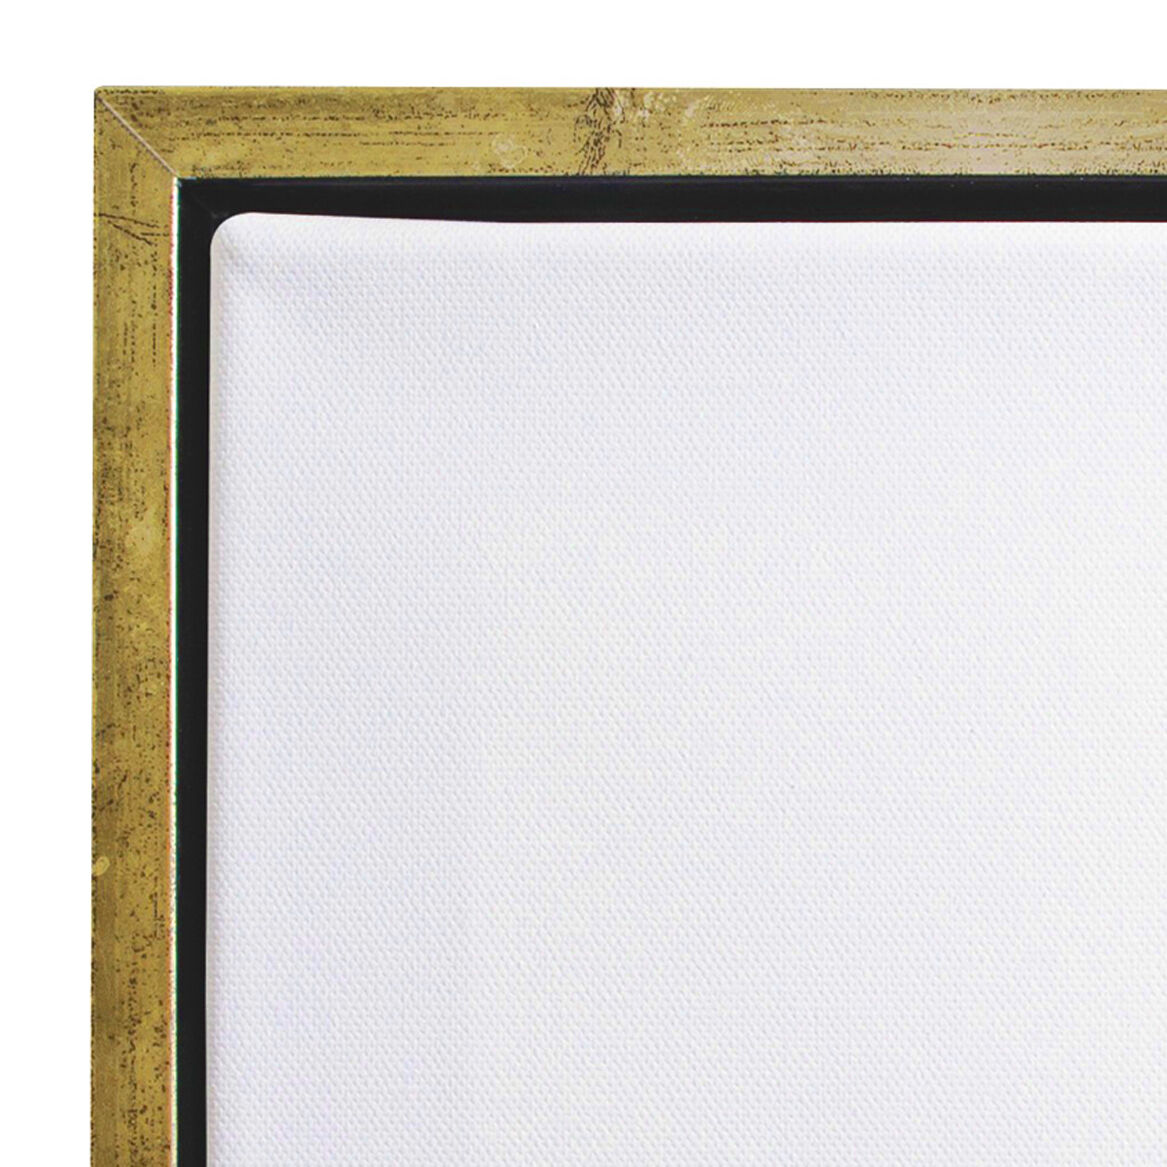 NEU Keilrahmen in Bilderrahmen mit Schattenfuge Gold, 20 x 20 cm KR + Schrauben - 1 Stück Bild 2